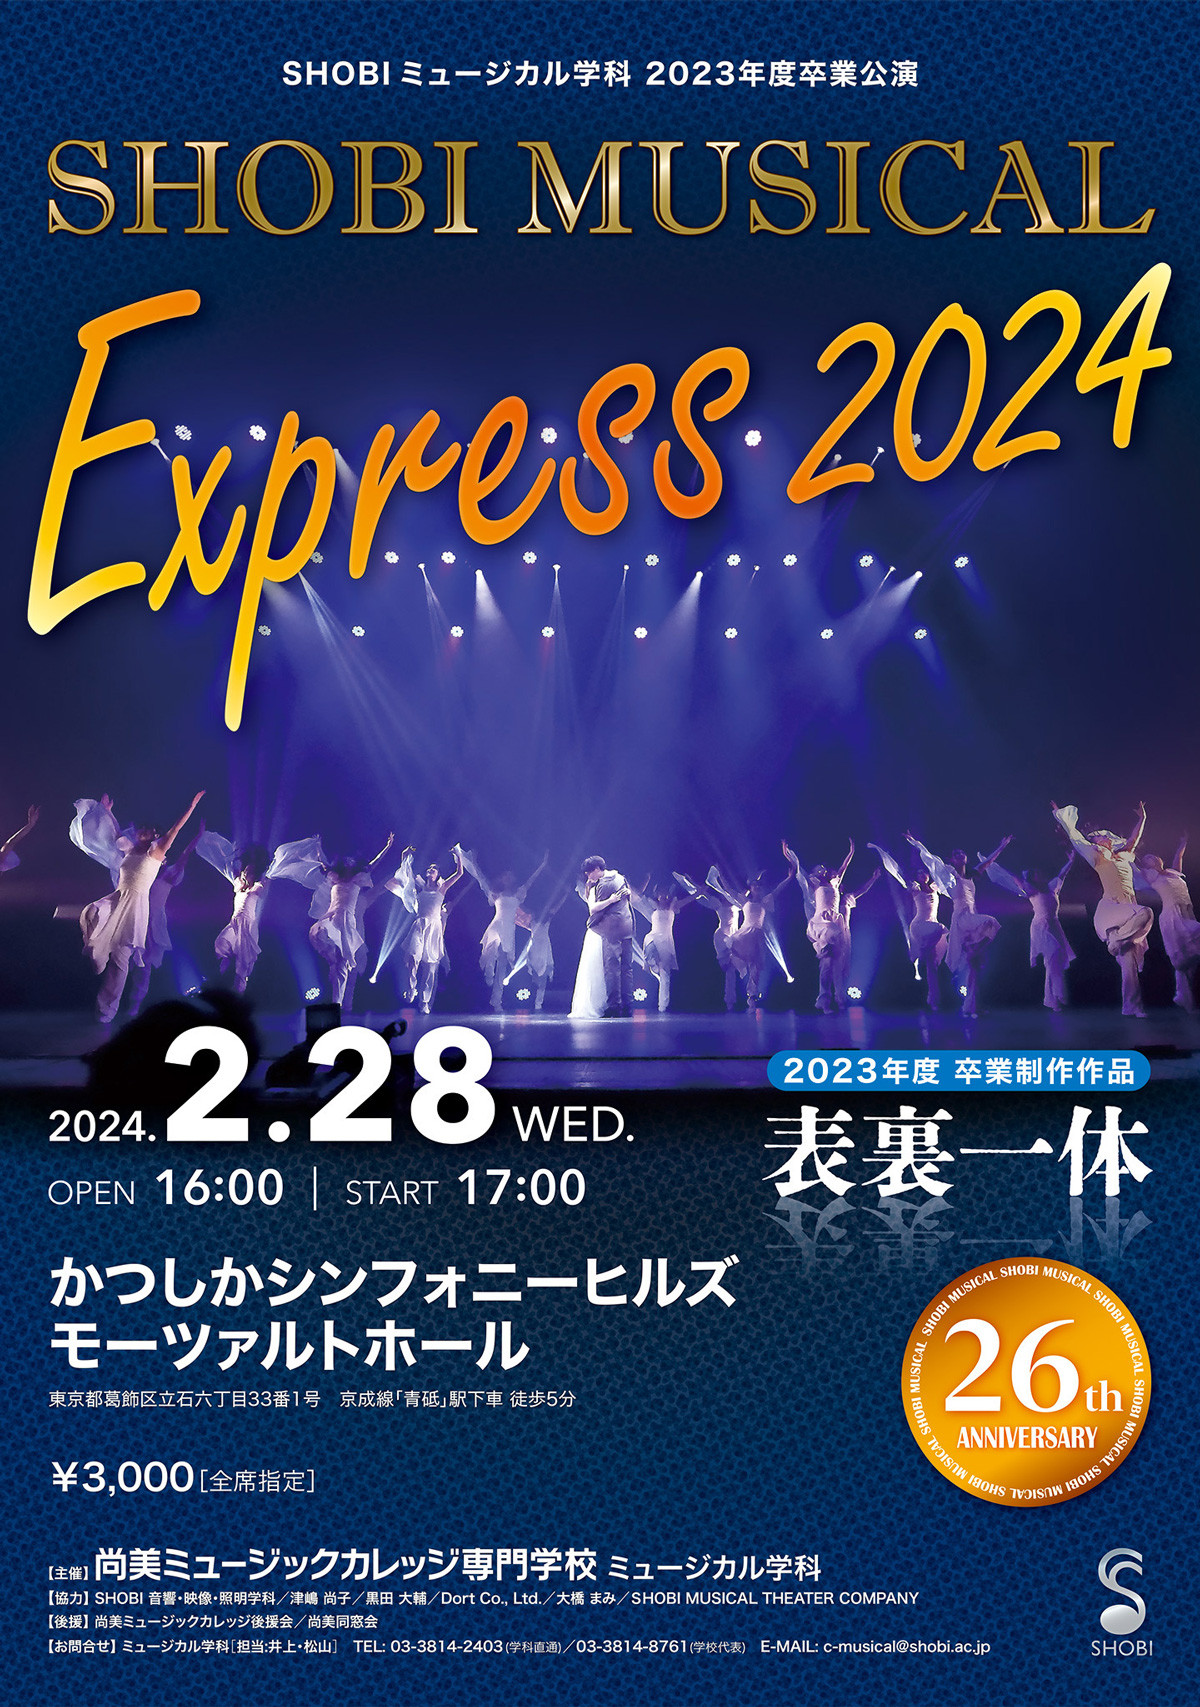 【2月28日開催】ミュージカル学科の2023年度卒業制作作品SHOBI MUSICAL EXPRESS 2024「表裏一体」